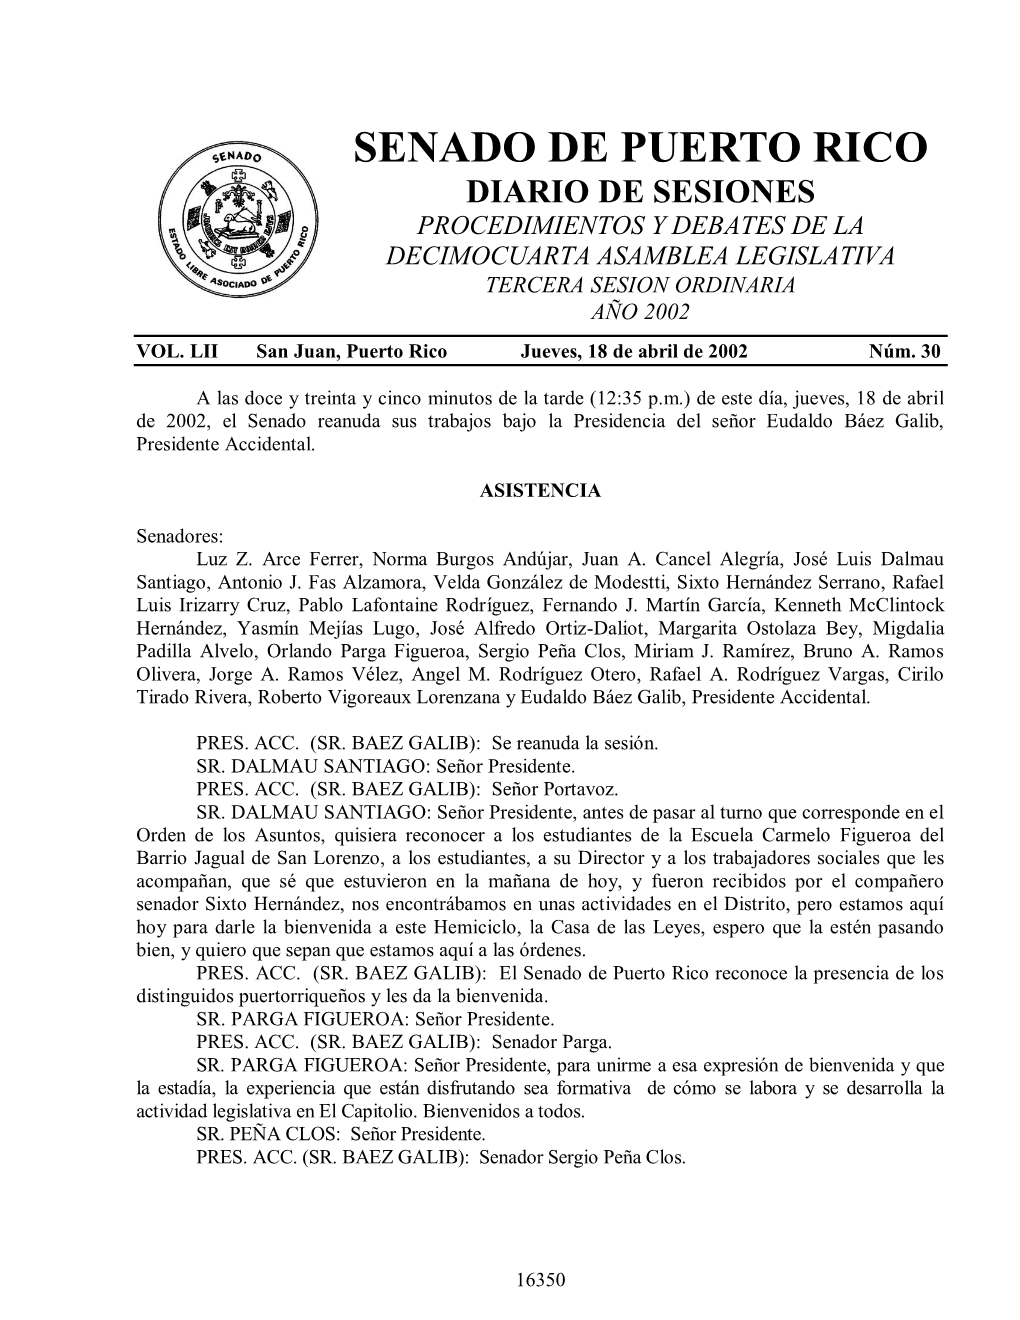 Senado De Puerto Rico Diario De Sesiones Procedimientos Y Debates De La Decimocuarta Asamblea Legislativa Tercera Sesion Ordinaria Año 2002 Vol